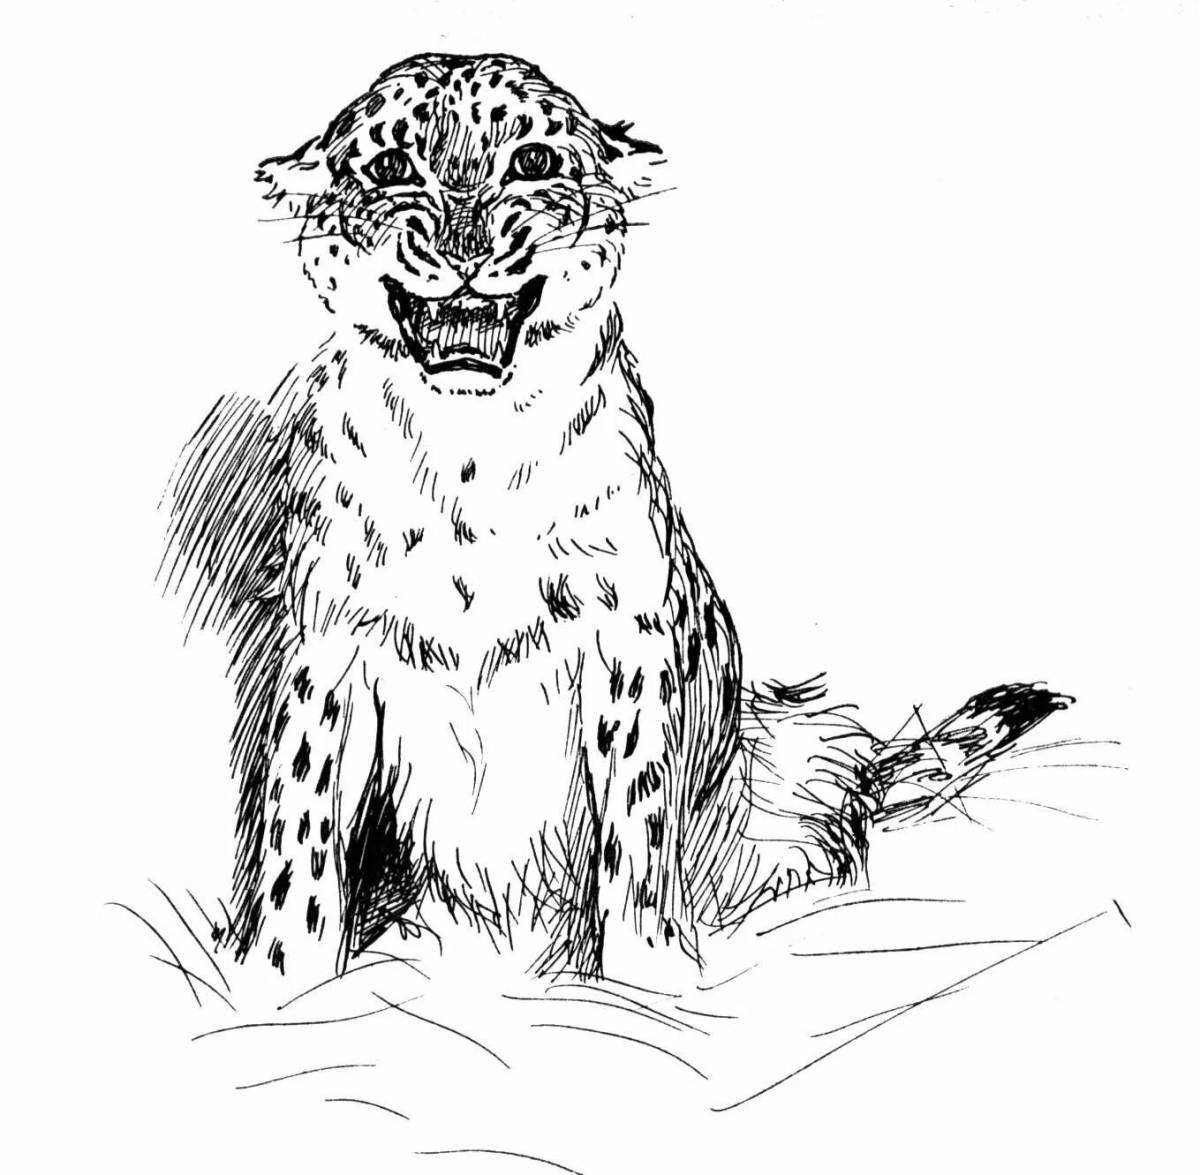 Coloring live snow leopard